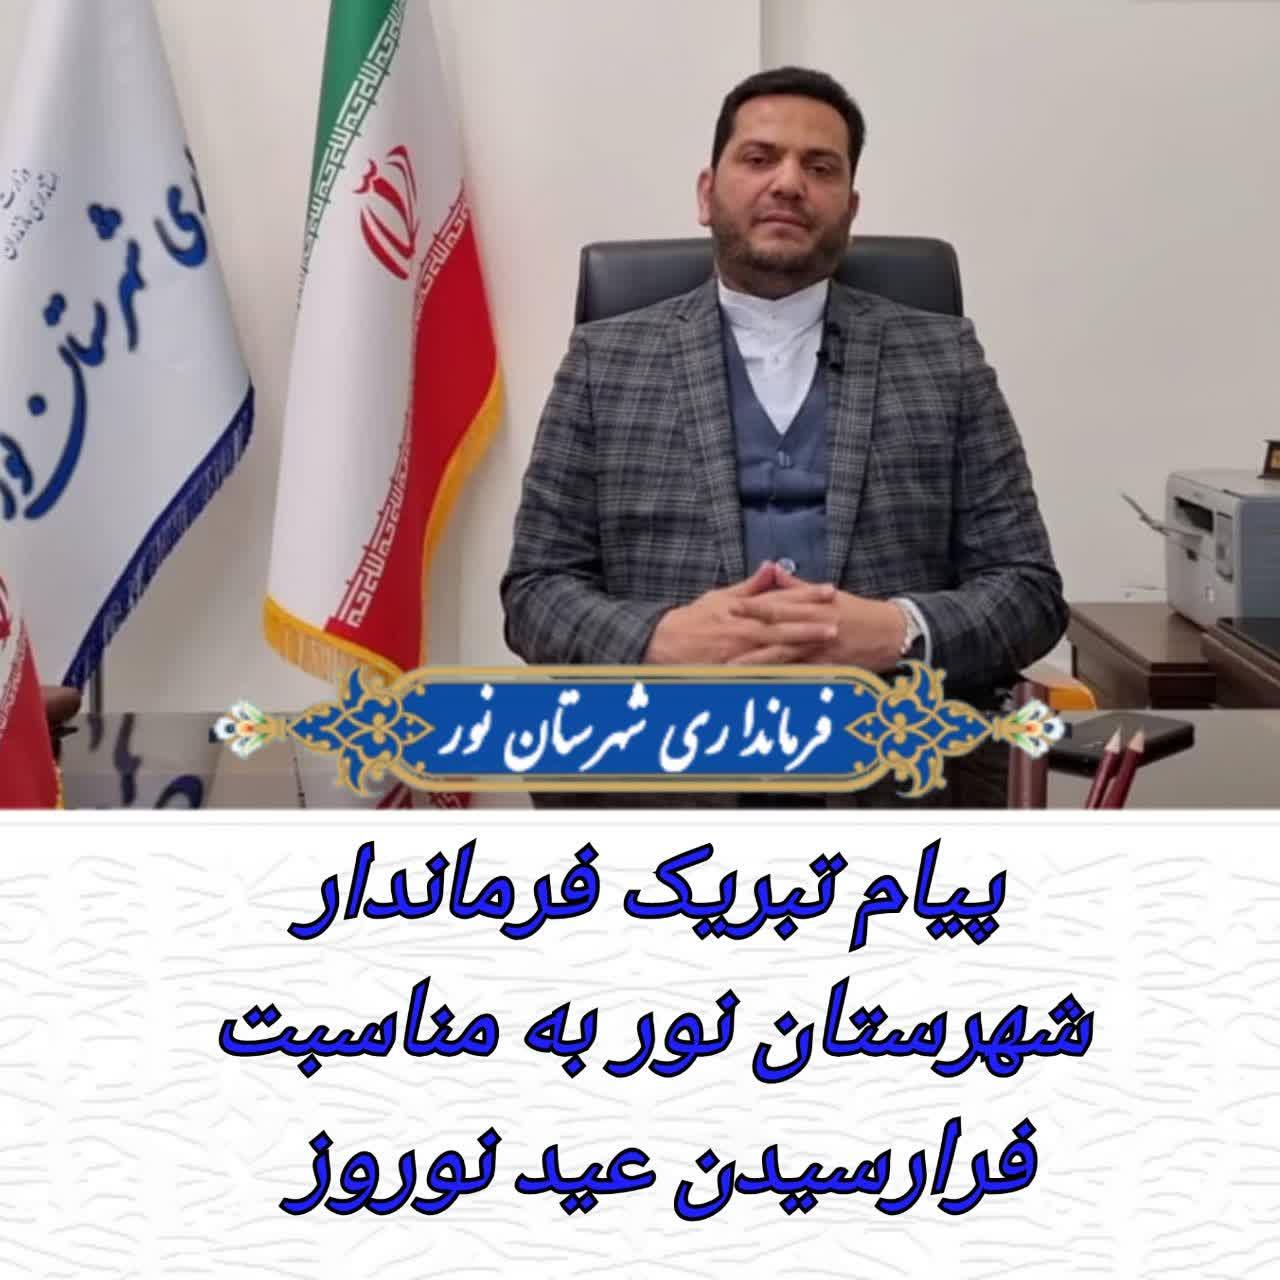 پیام تبریک فرماندار فرماندار شهرستان نور به مناسبت فرا رسیدن عید نوروز